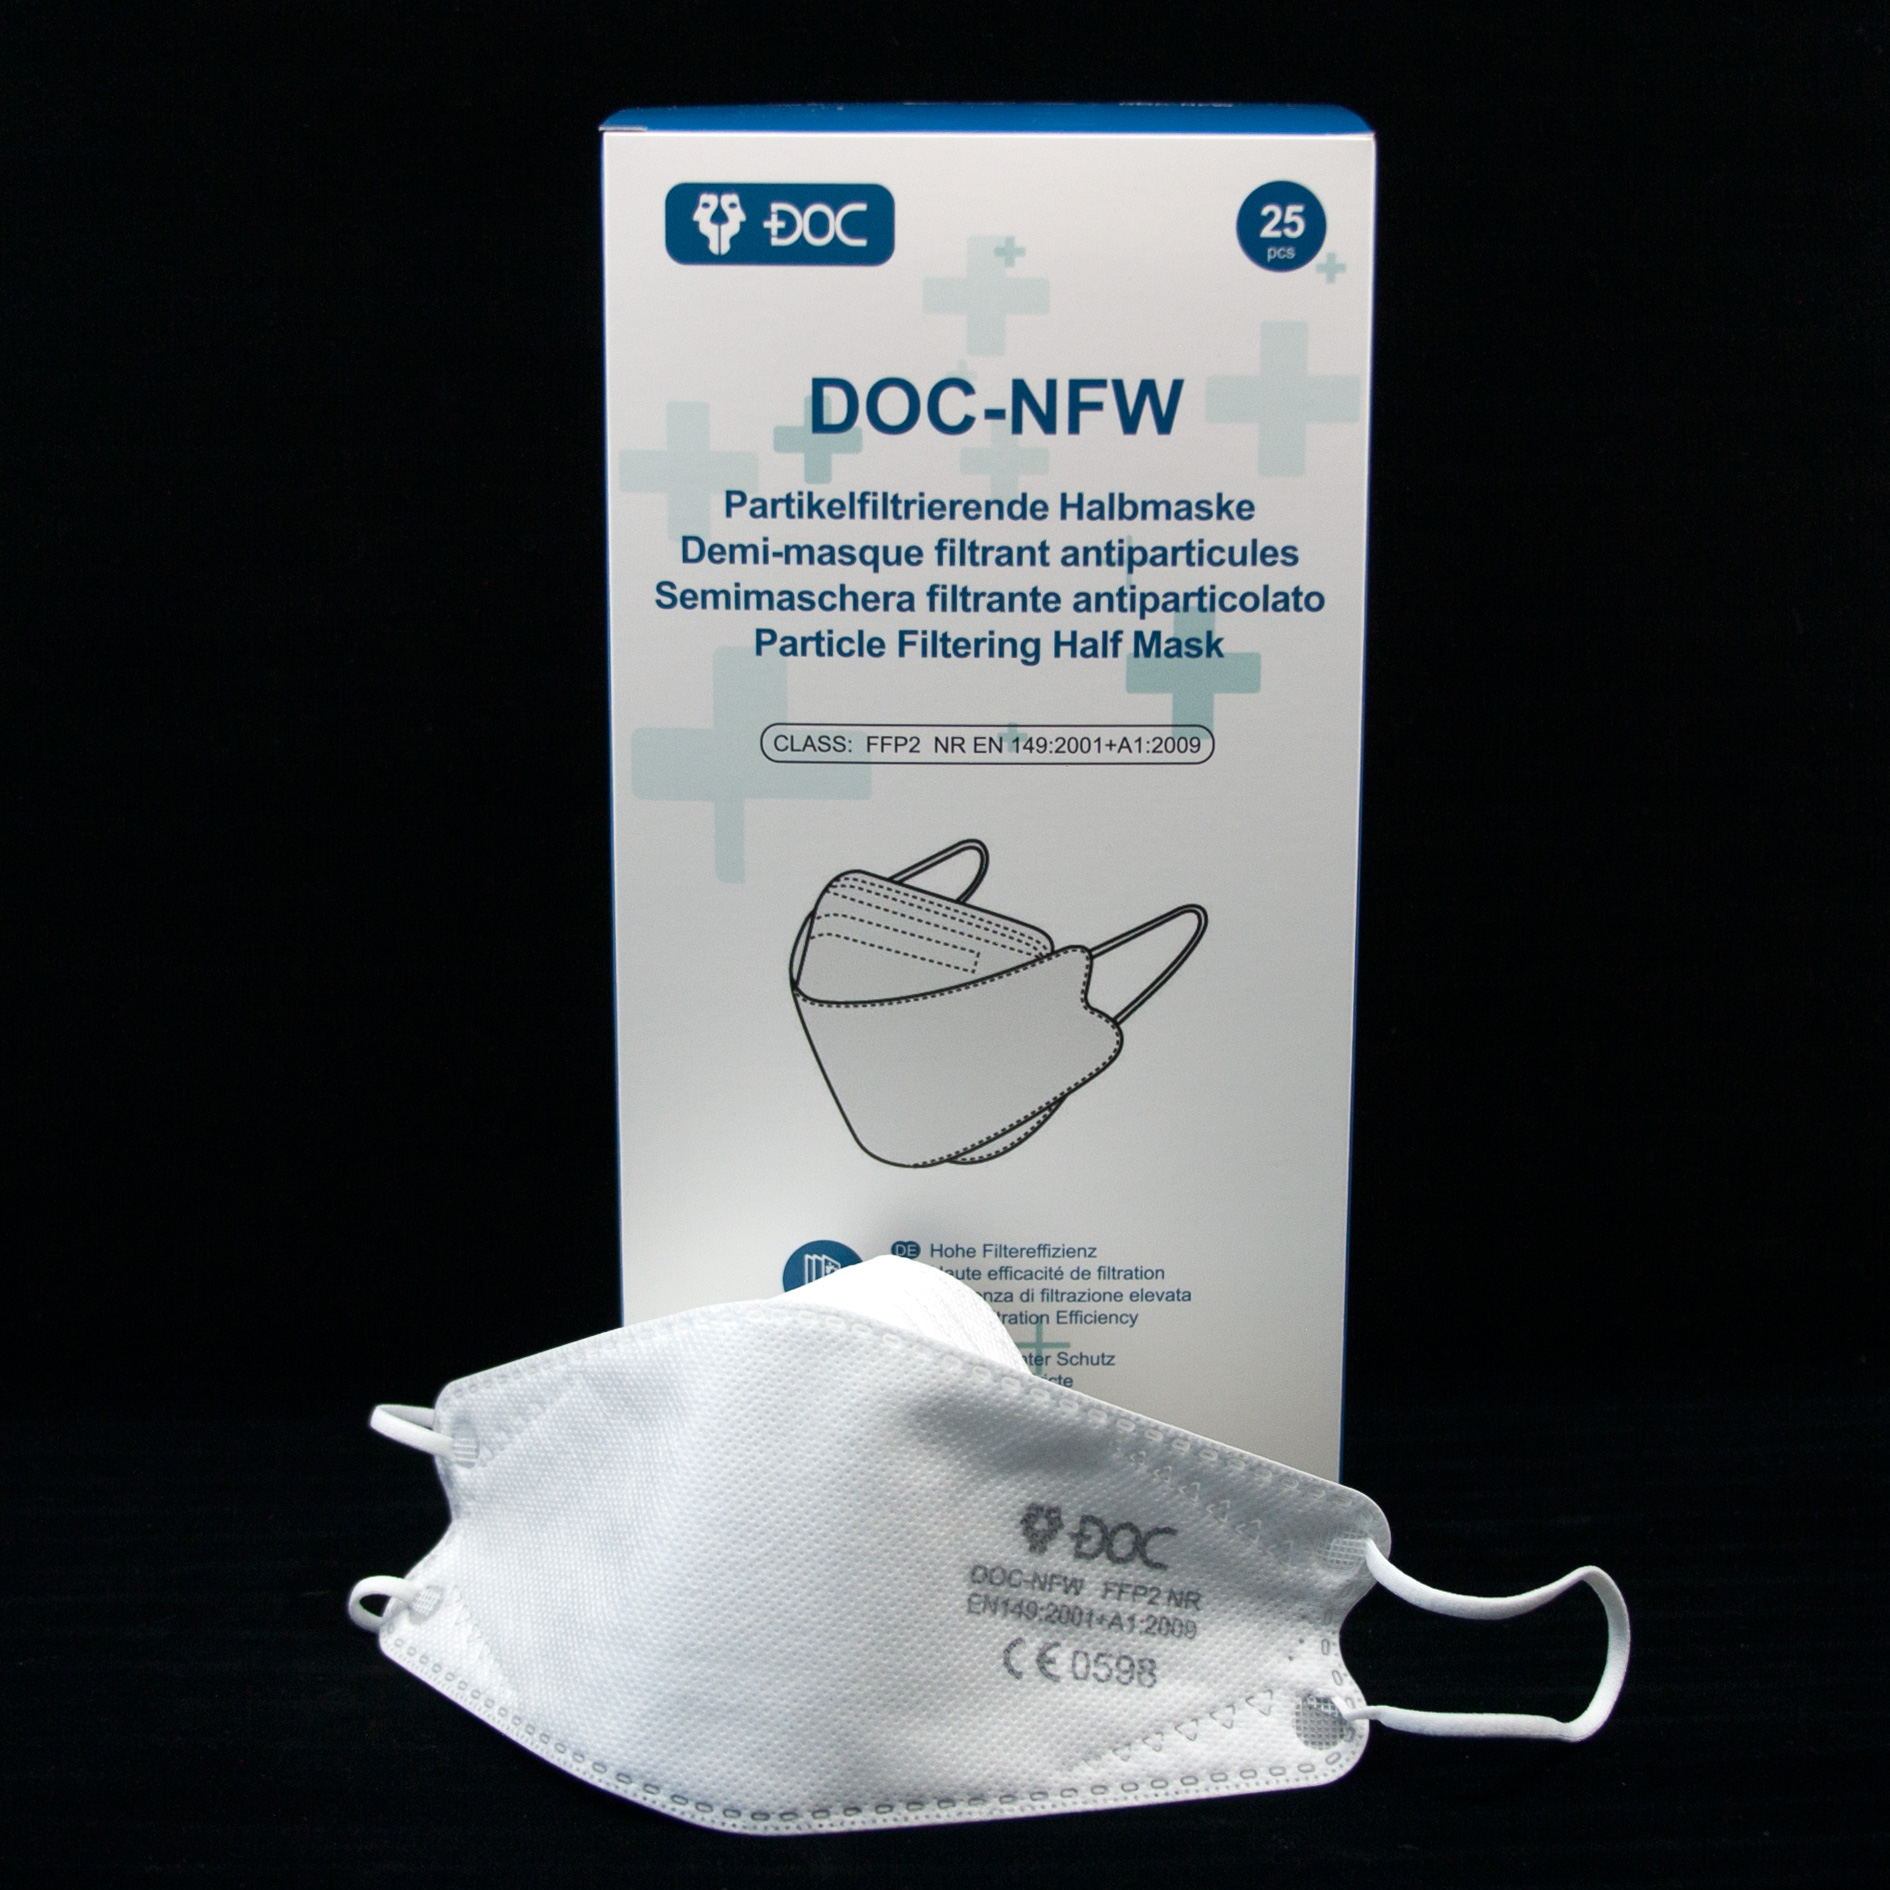 DOC-NFW Partikelfiltrirende Halbmaske Type FFP2 25 Stk. Einzelverpackt. Deutsche Beschriftung